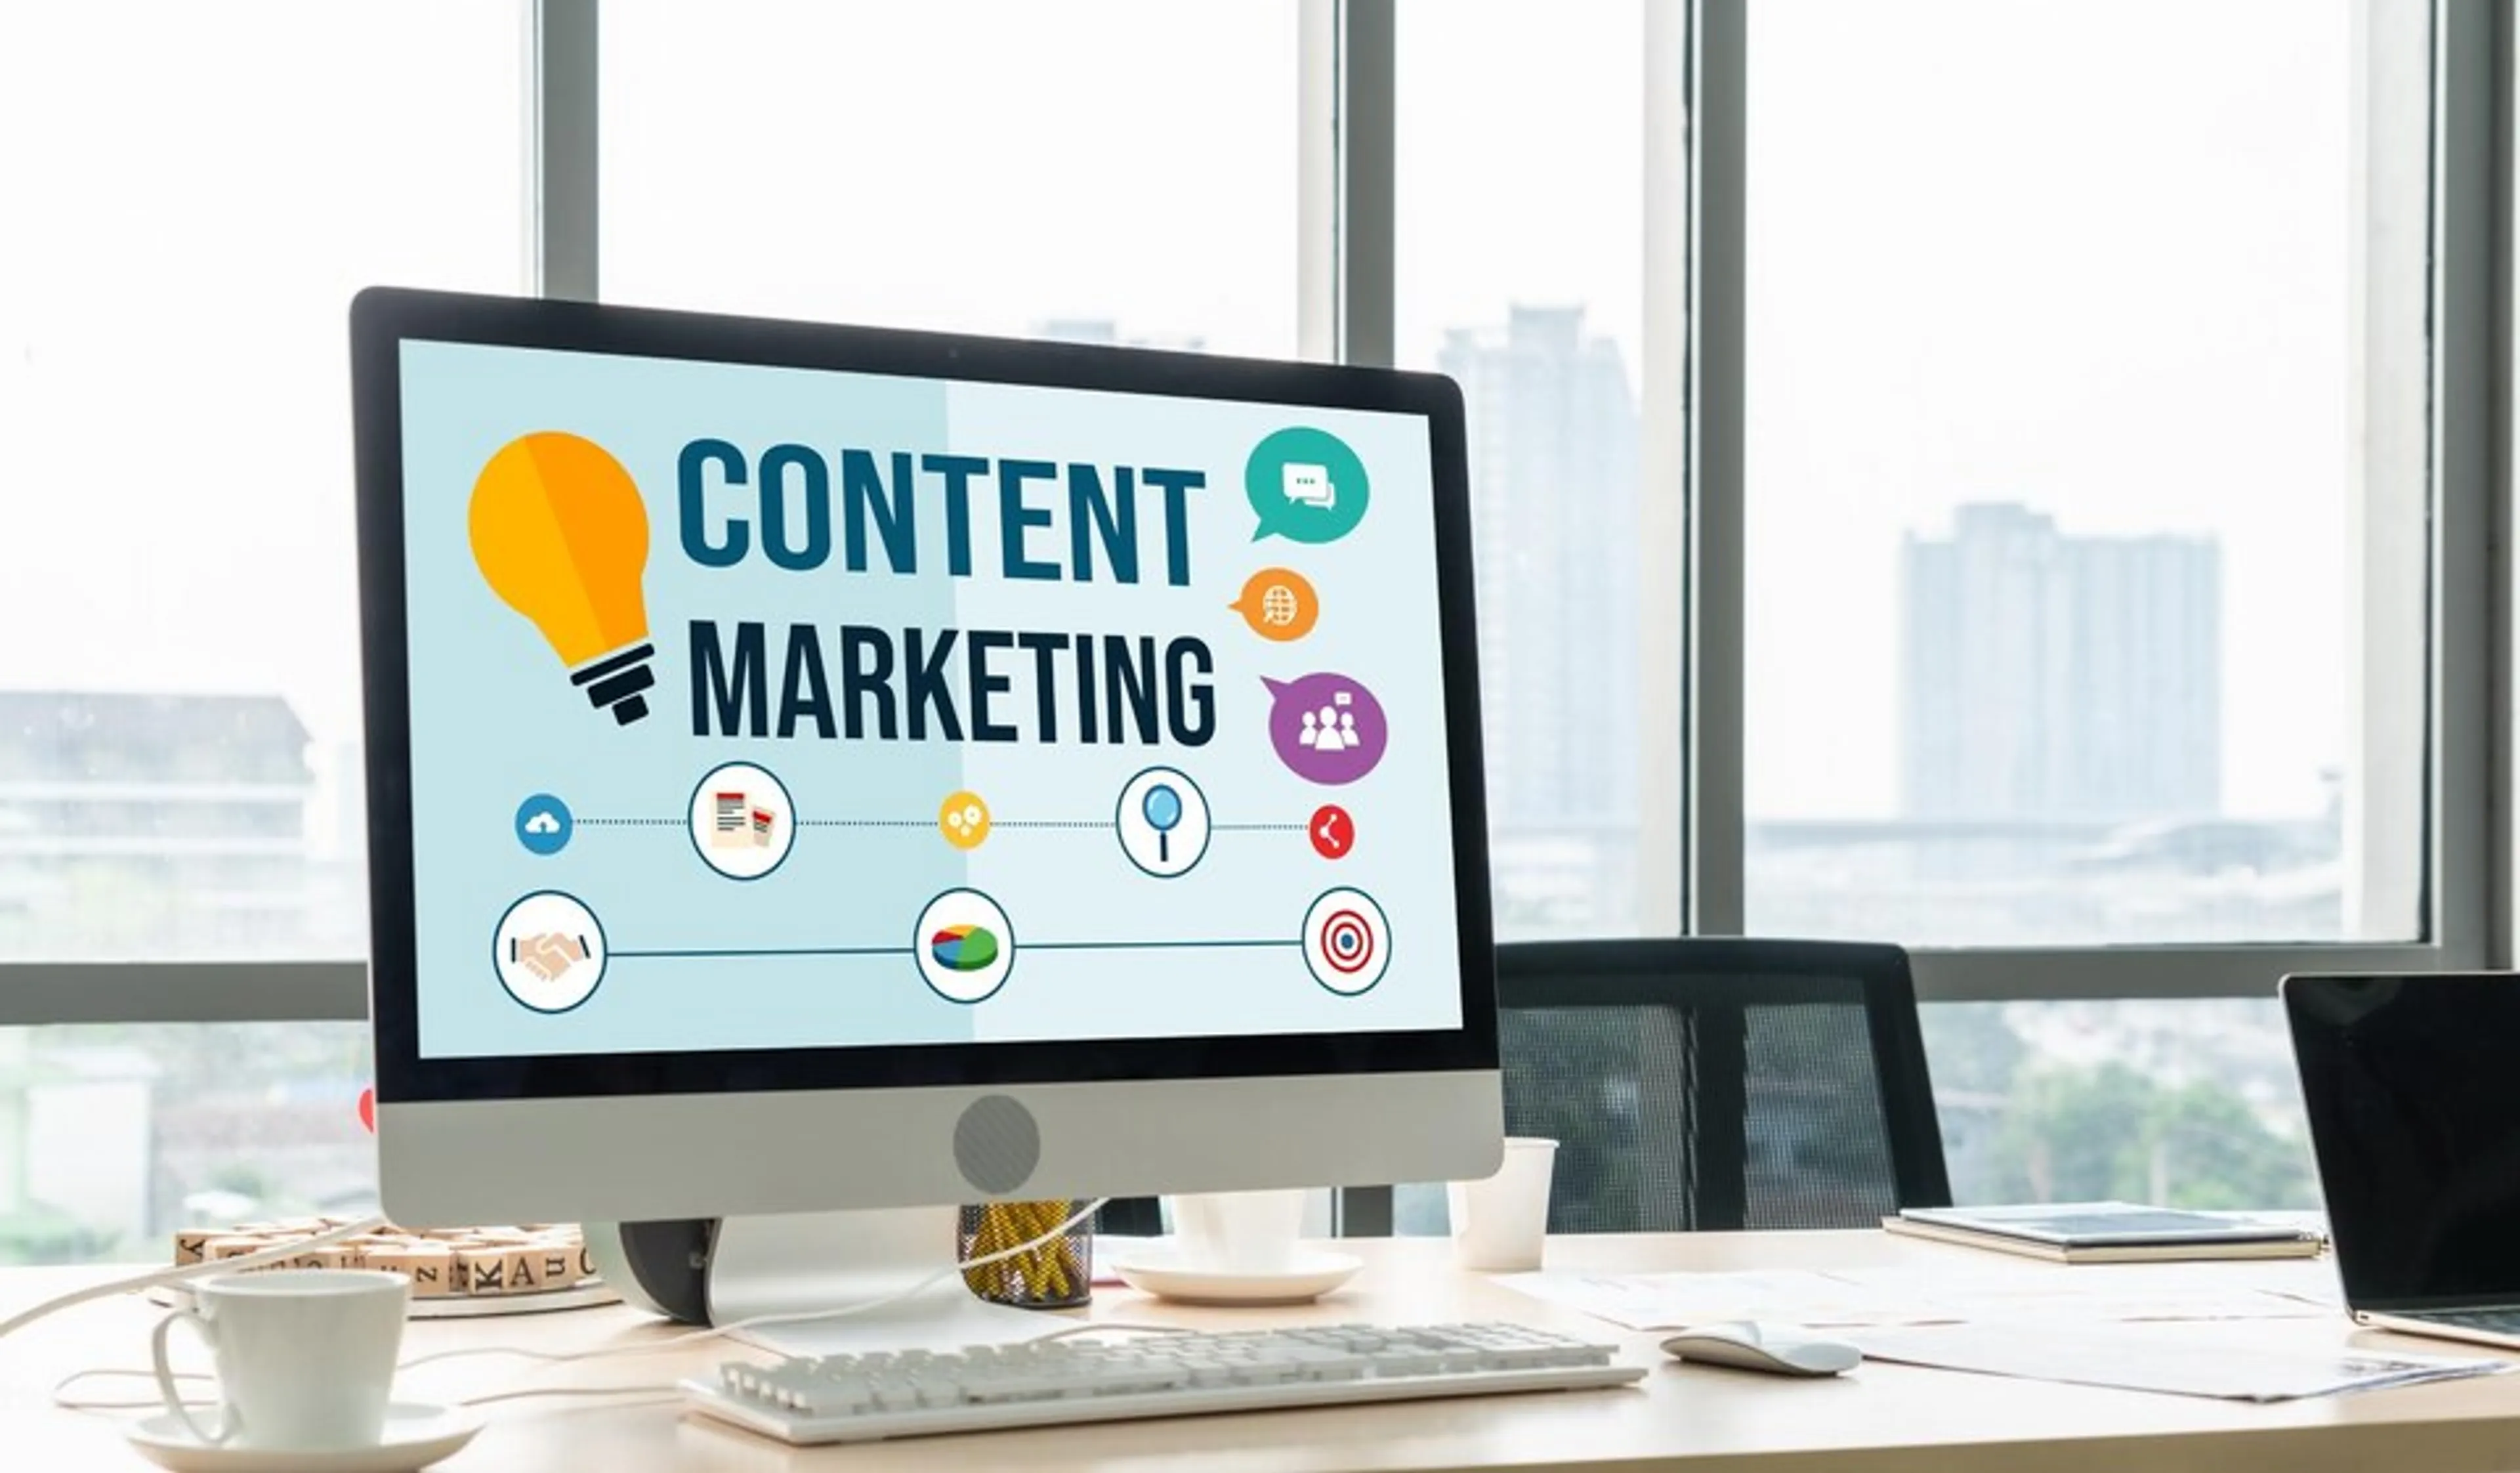 Content Marketing là gì và xây dựng nội dung hiệu quả bằng cách nào?